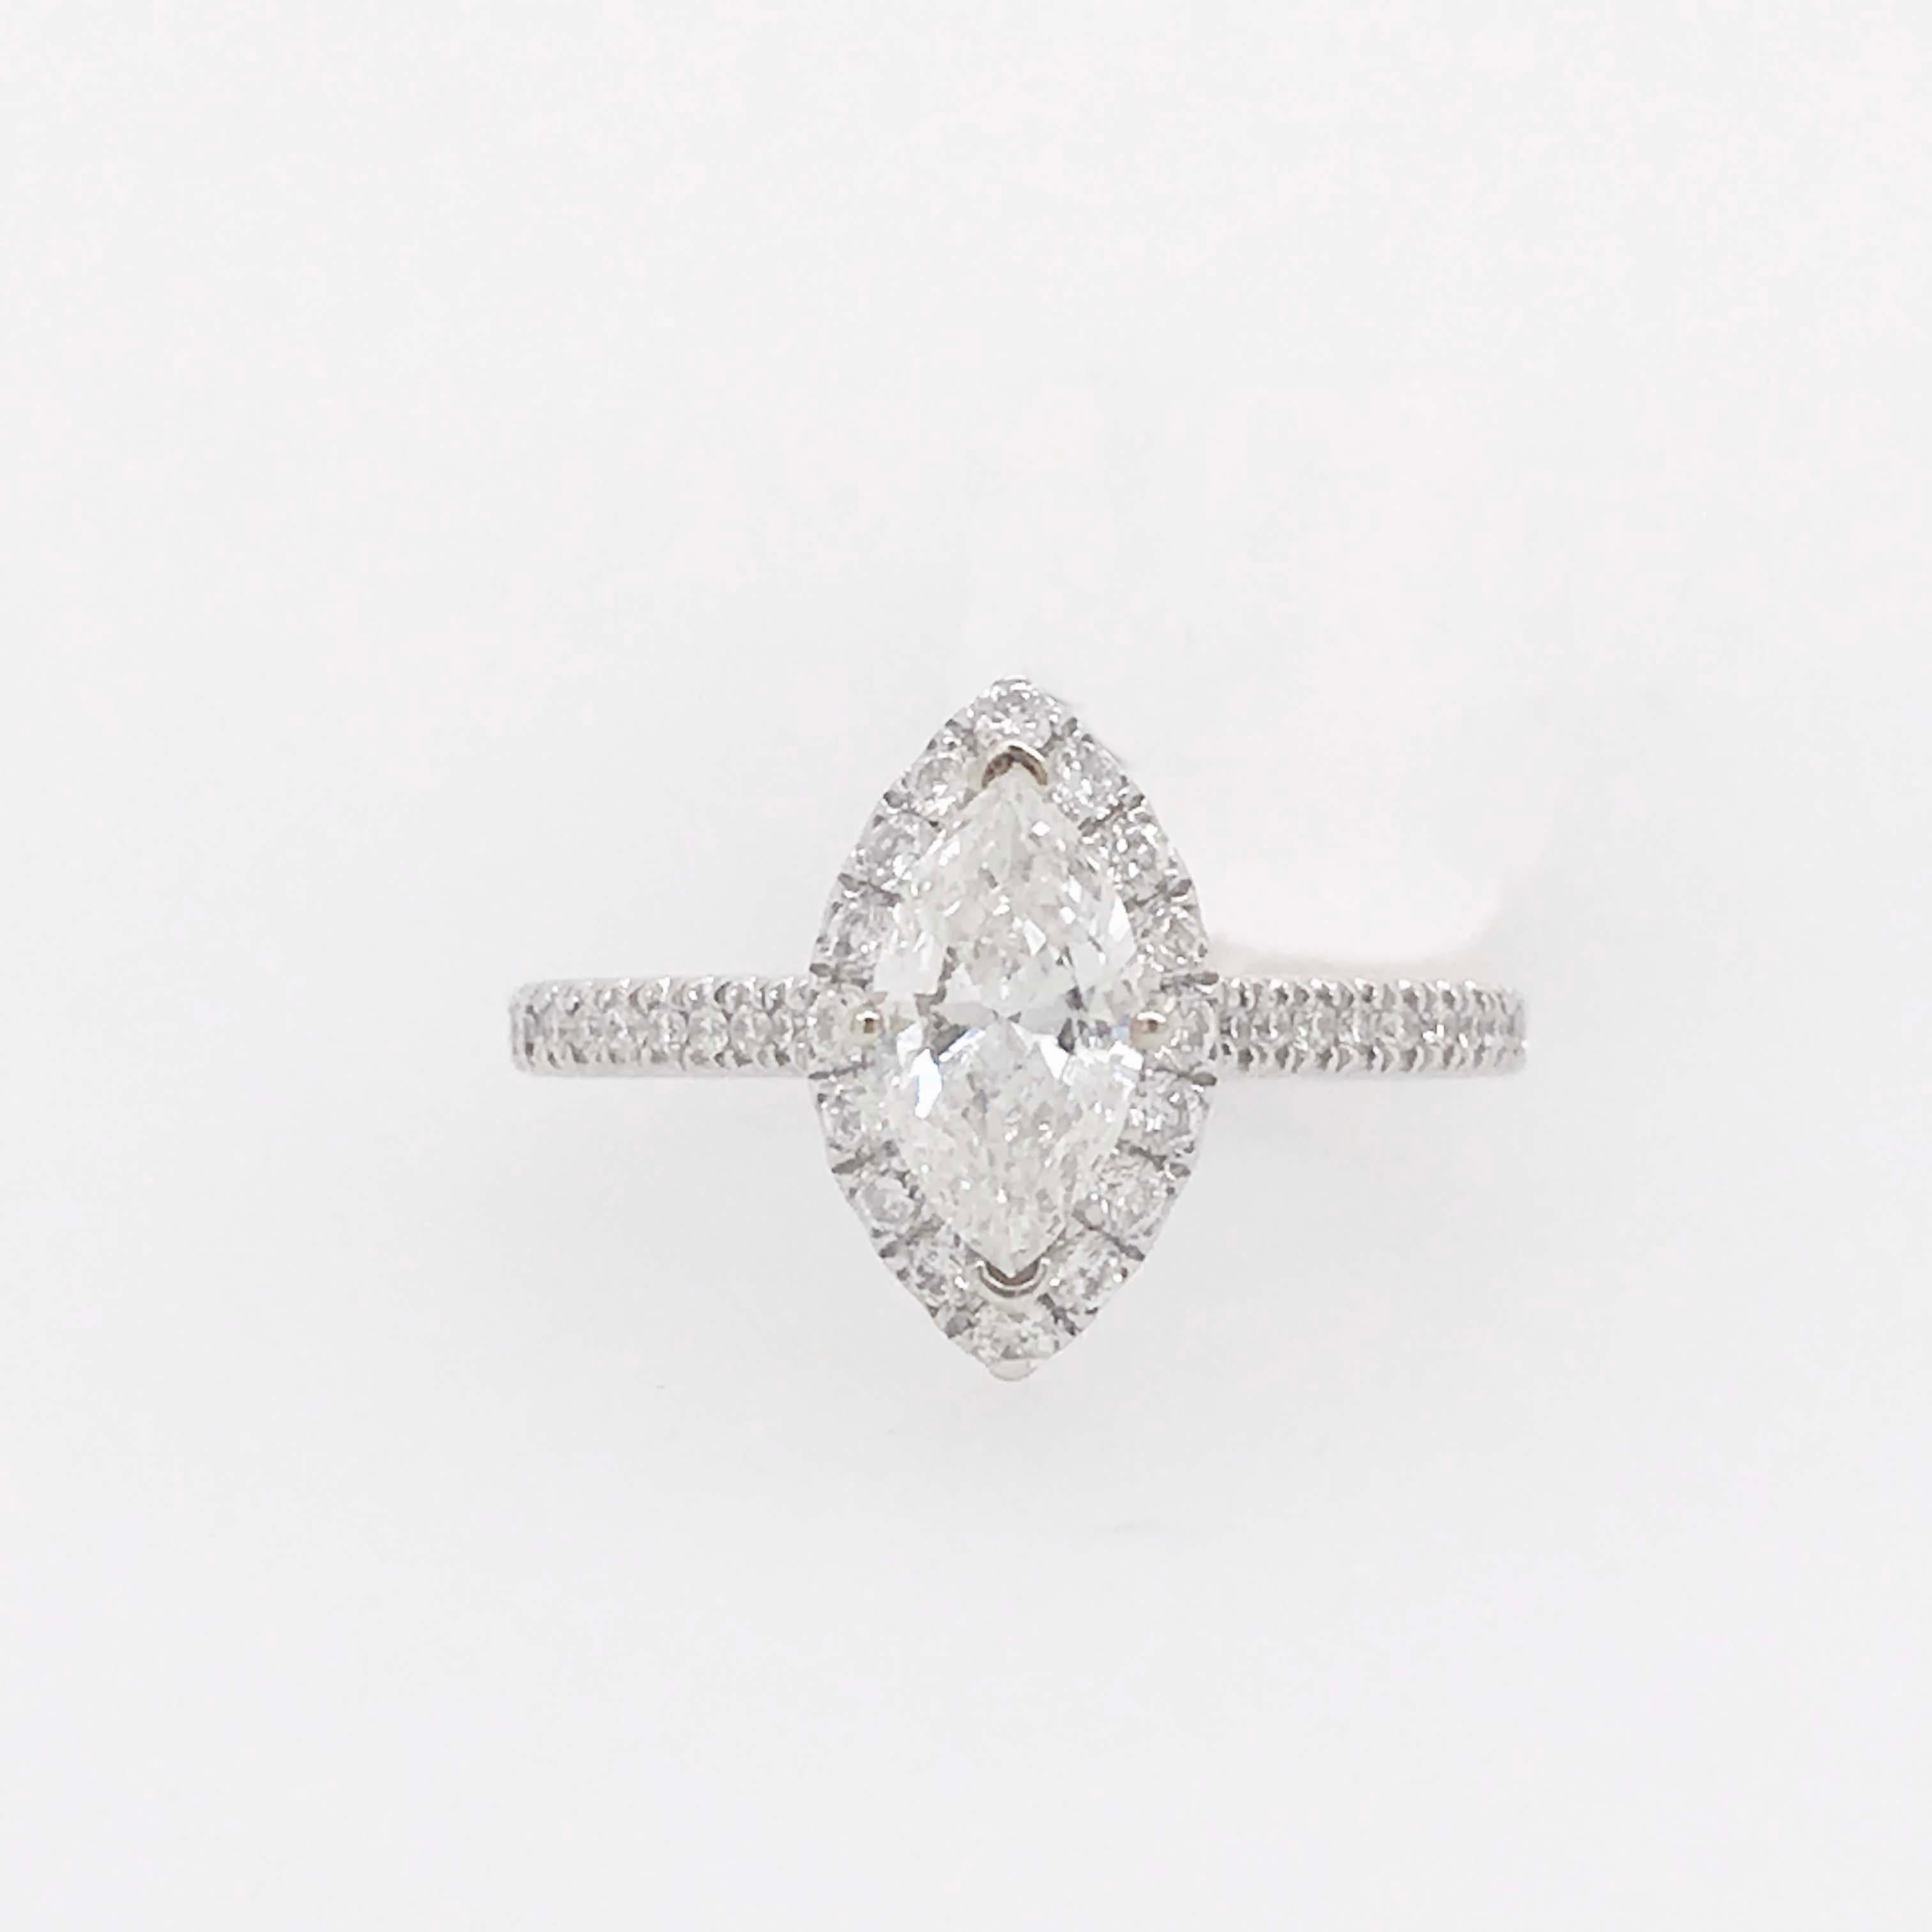 Ein schöner diamantener Verlobungsring mit einem Marquise-Diamanten von 0,60 Karat und einem Diamant-Halo von 0,35 Karat. Der Diamant in der Mitte ist eine schöne Marquise Form mit einem hellen weißen F Farbe Grad und ein Auge sauber SI-1 Klarheit